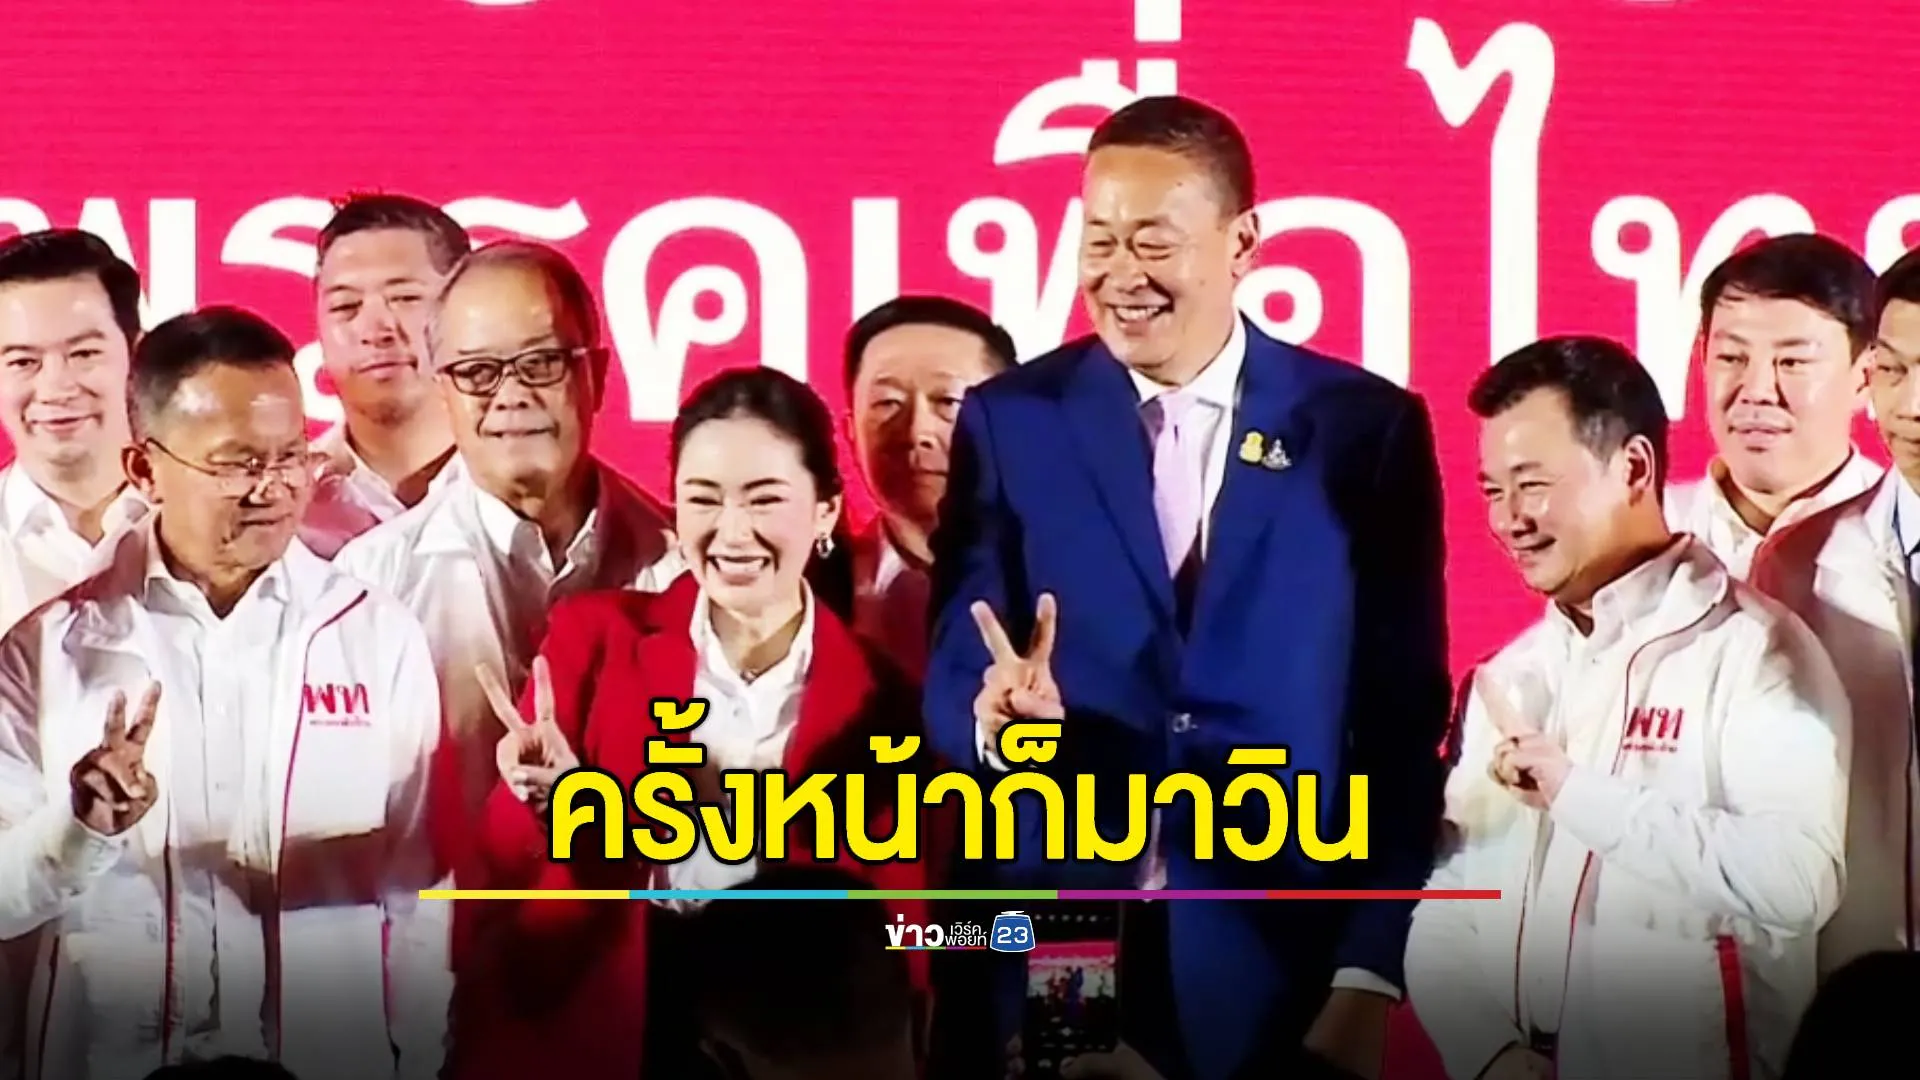 'เศรษฐา' ประกาศ จะพาพรรคเพื่อไทยชนะการเลือกตั้งครั้งหน้า- 'ทักษิณ' มั่นใจ 'อุ๊งอิงค์' จะเป็นผู้นำที่ดีได้